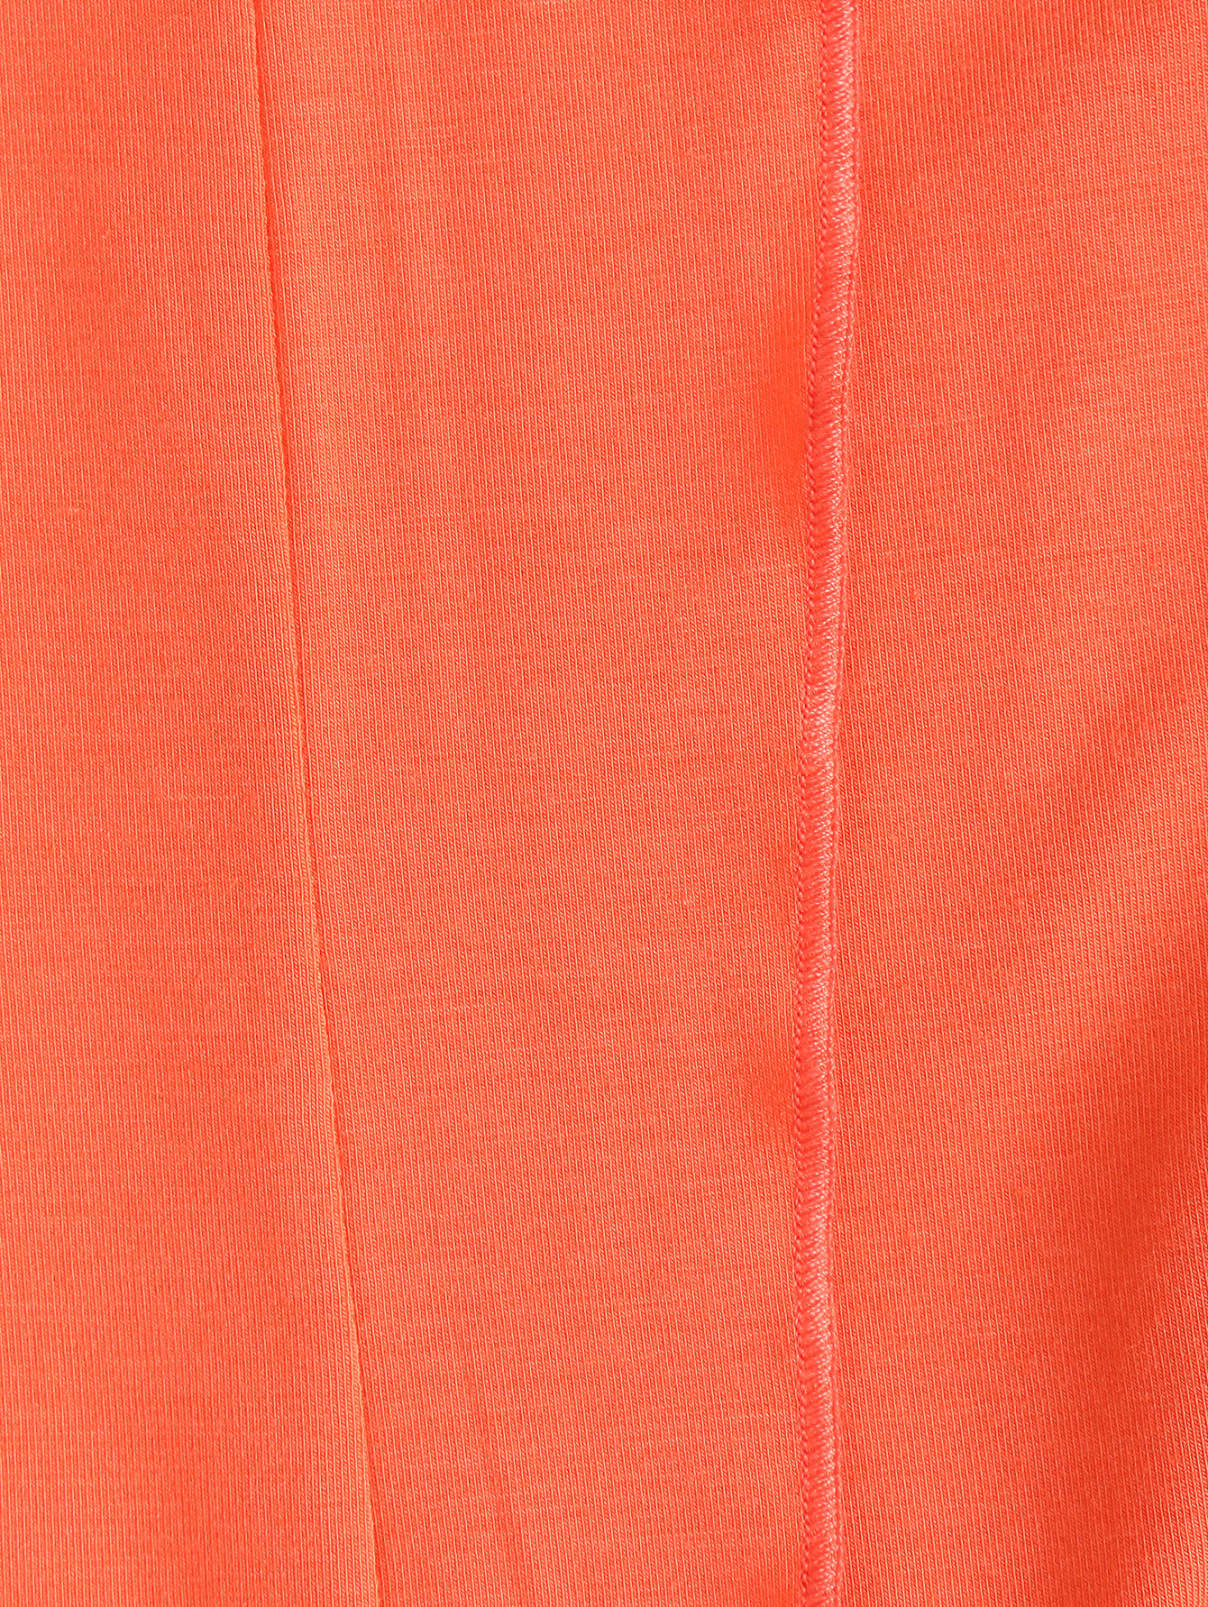 Трикотажное платье-мини с декором Sonia Rykiel  –  Деталь1  – Цвет:  Оранжевый